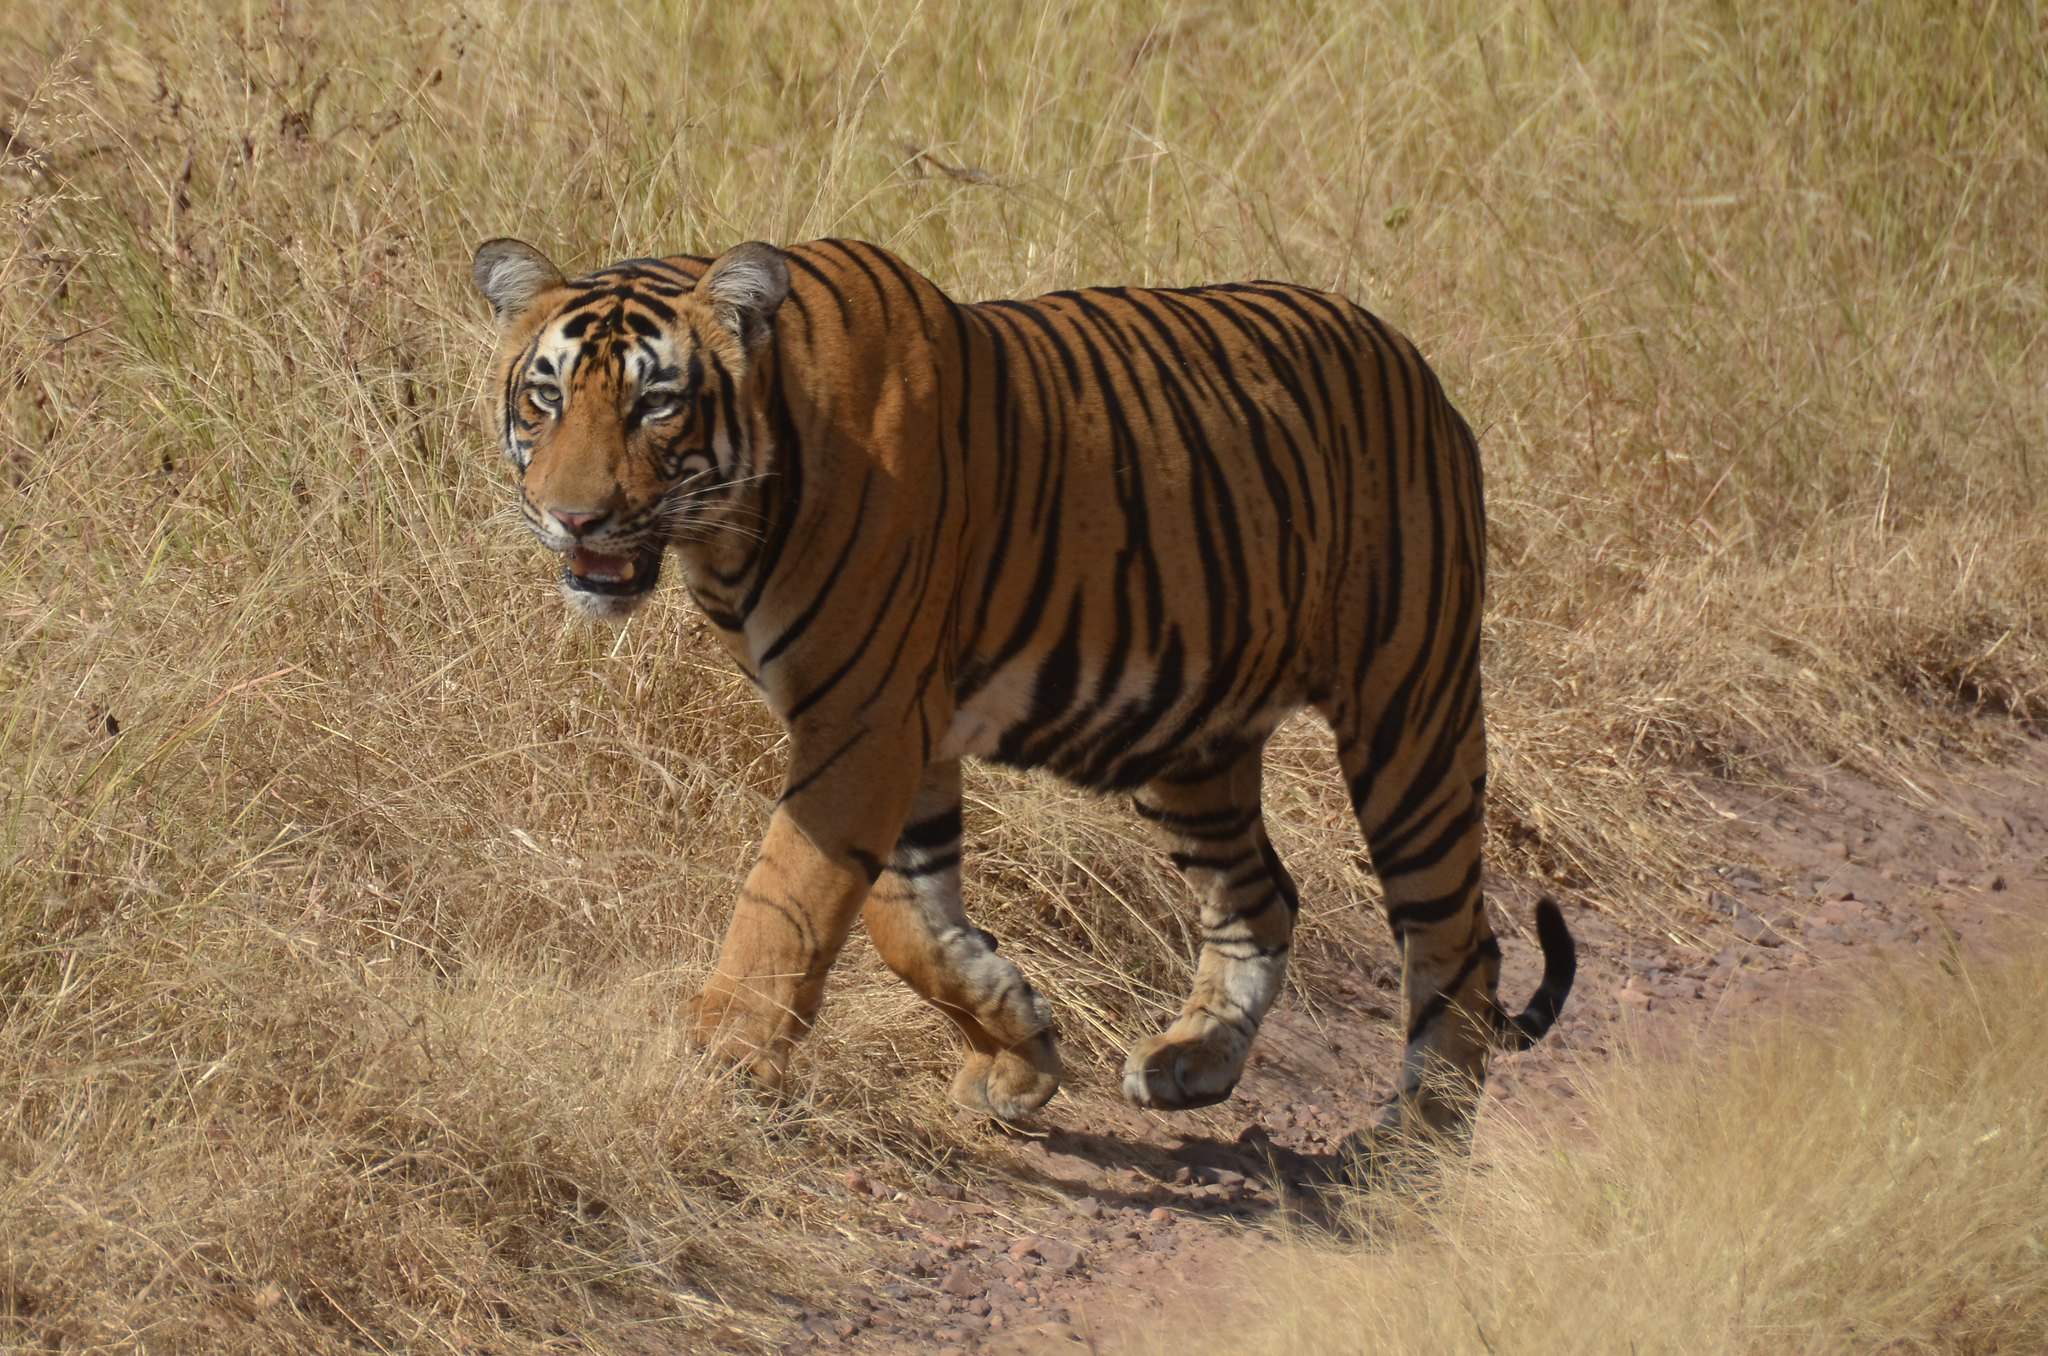 Le tigre a erré sur plus de 1.300 km à la recherche d’un nouveau territoire. © cloudzilla, Flickr